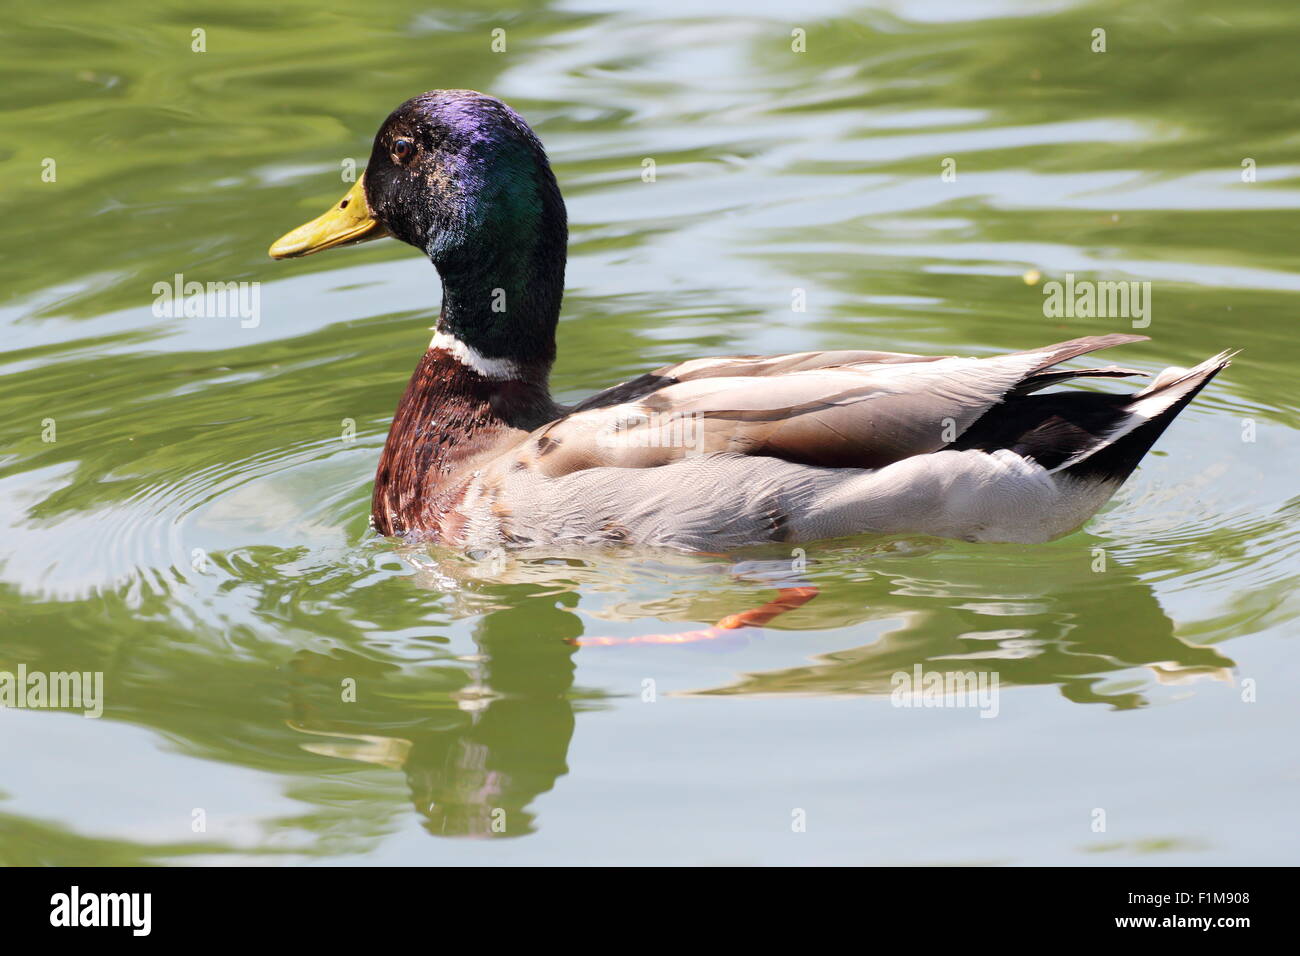 beautiful male mallard duck swimming on lake surface Stock Photo